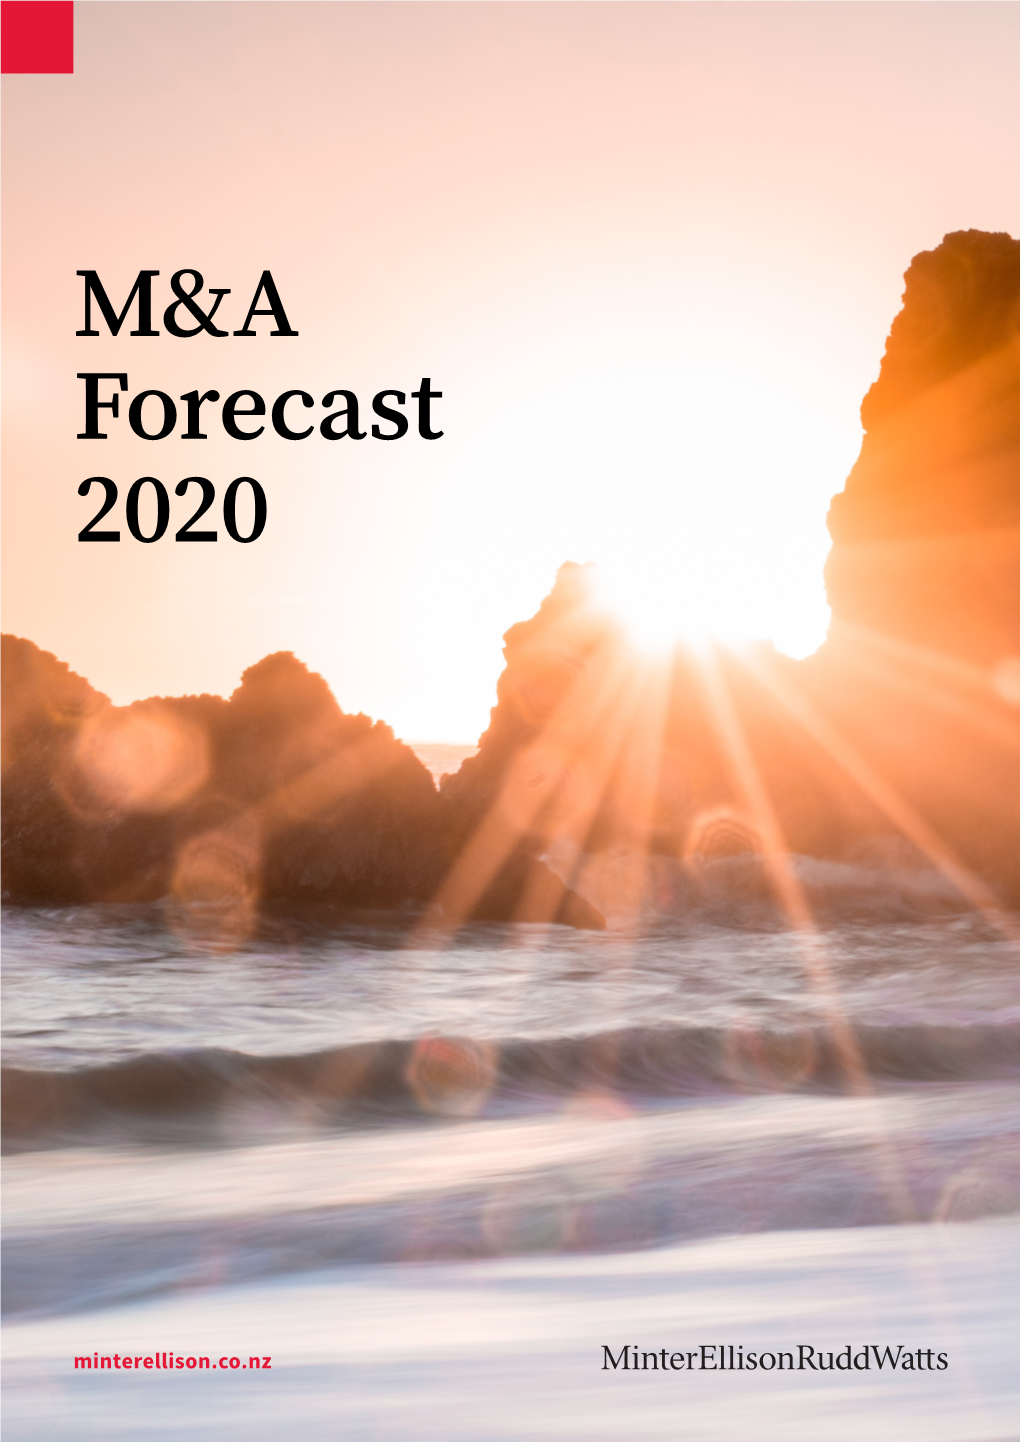 M&A Forecast 2020